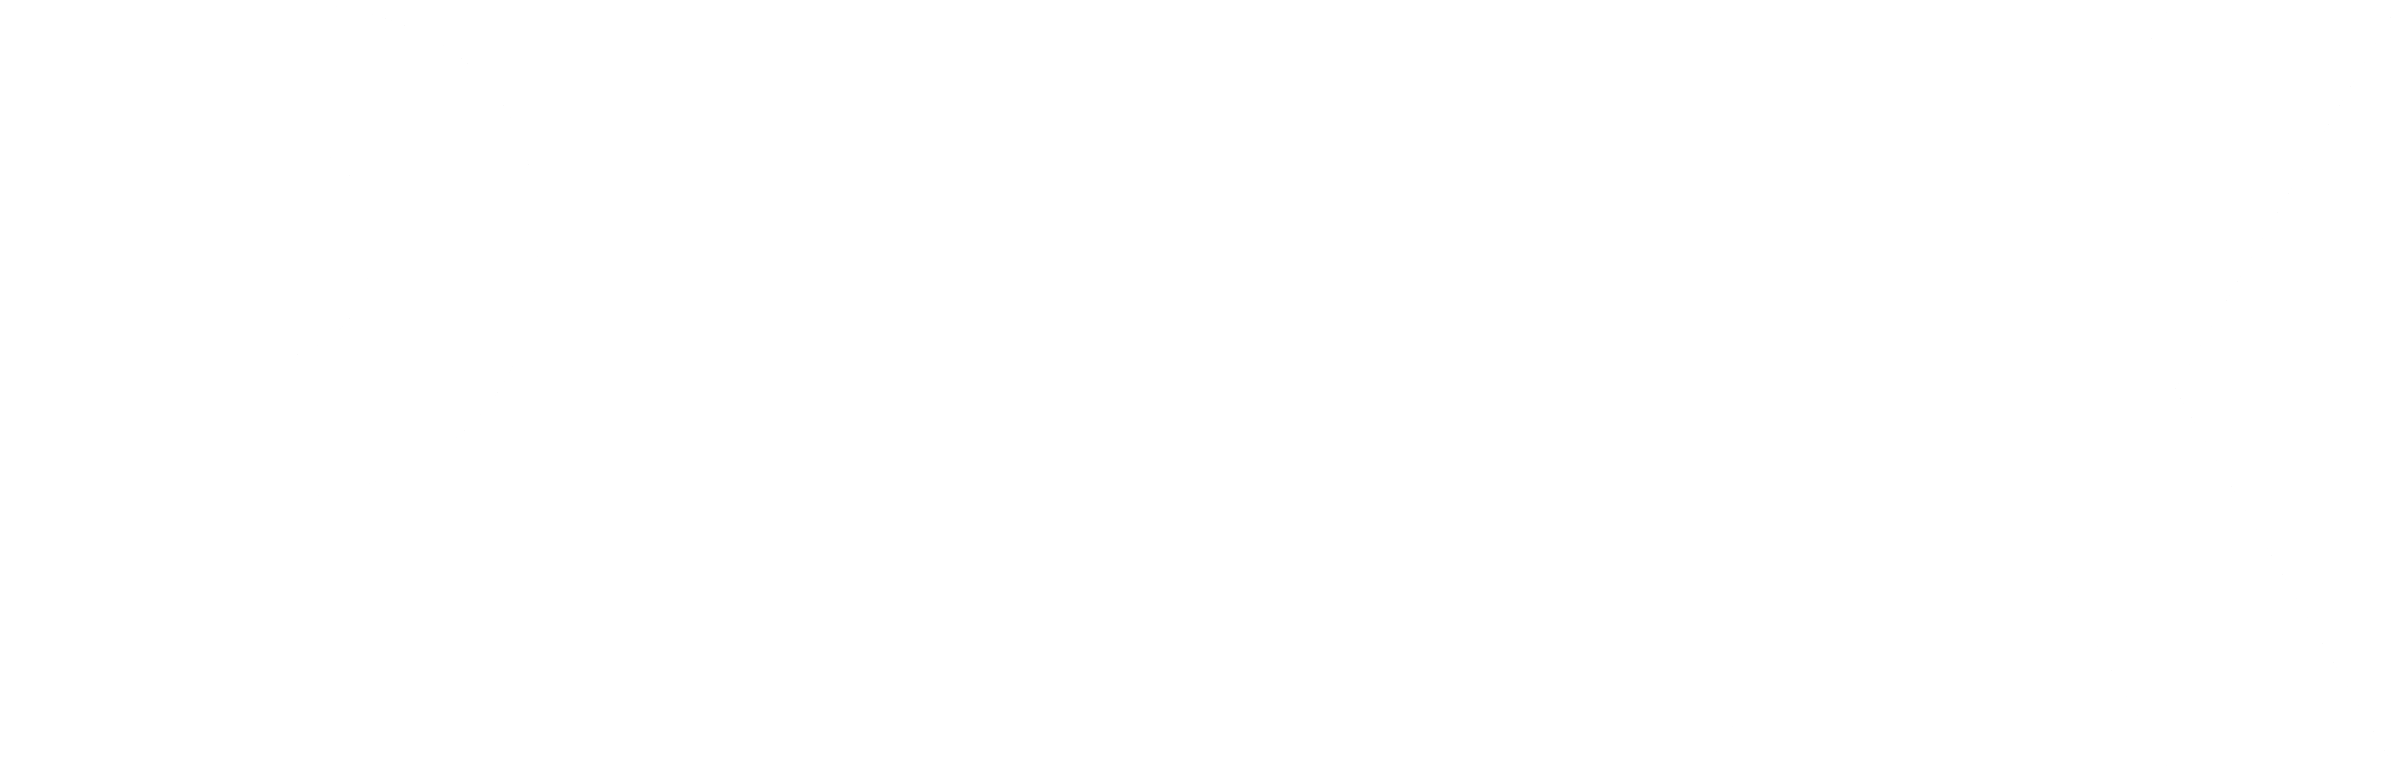 plex-logo-black-and-white